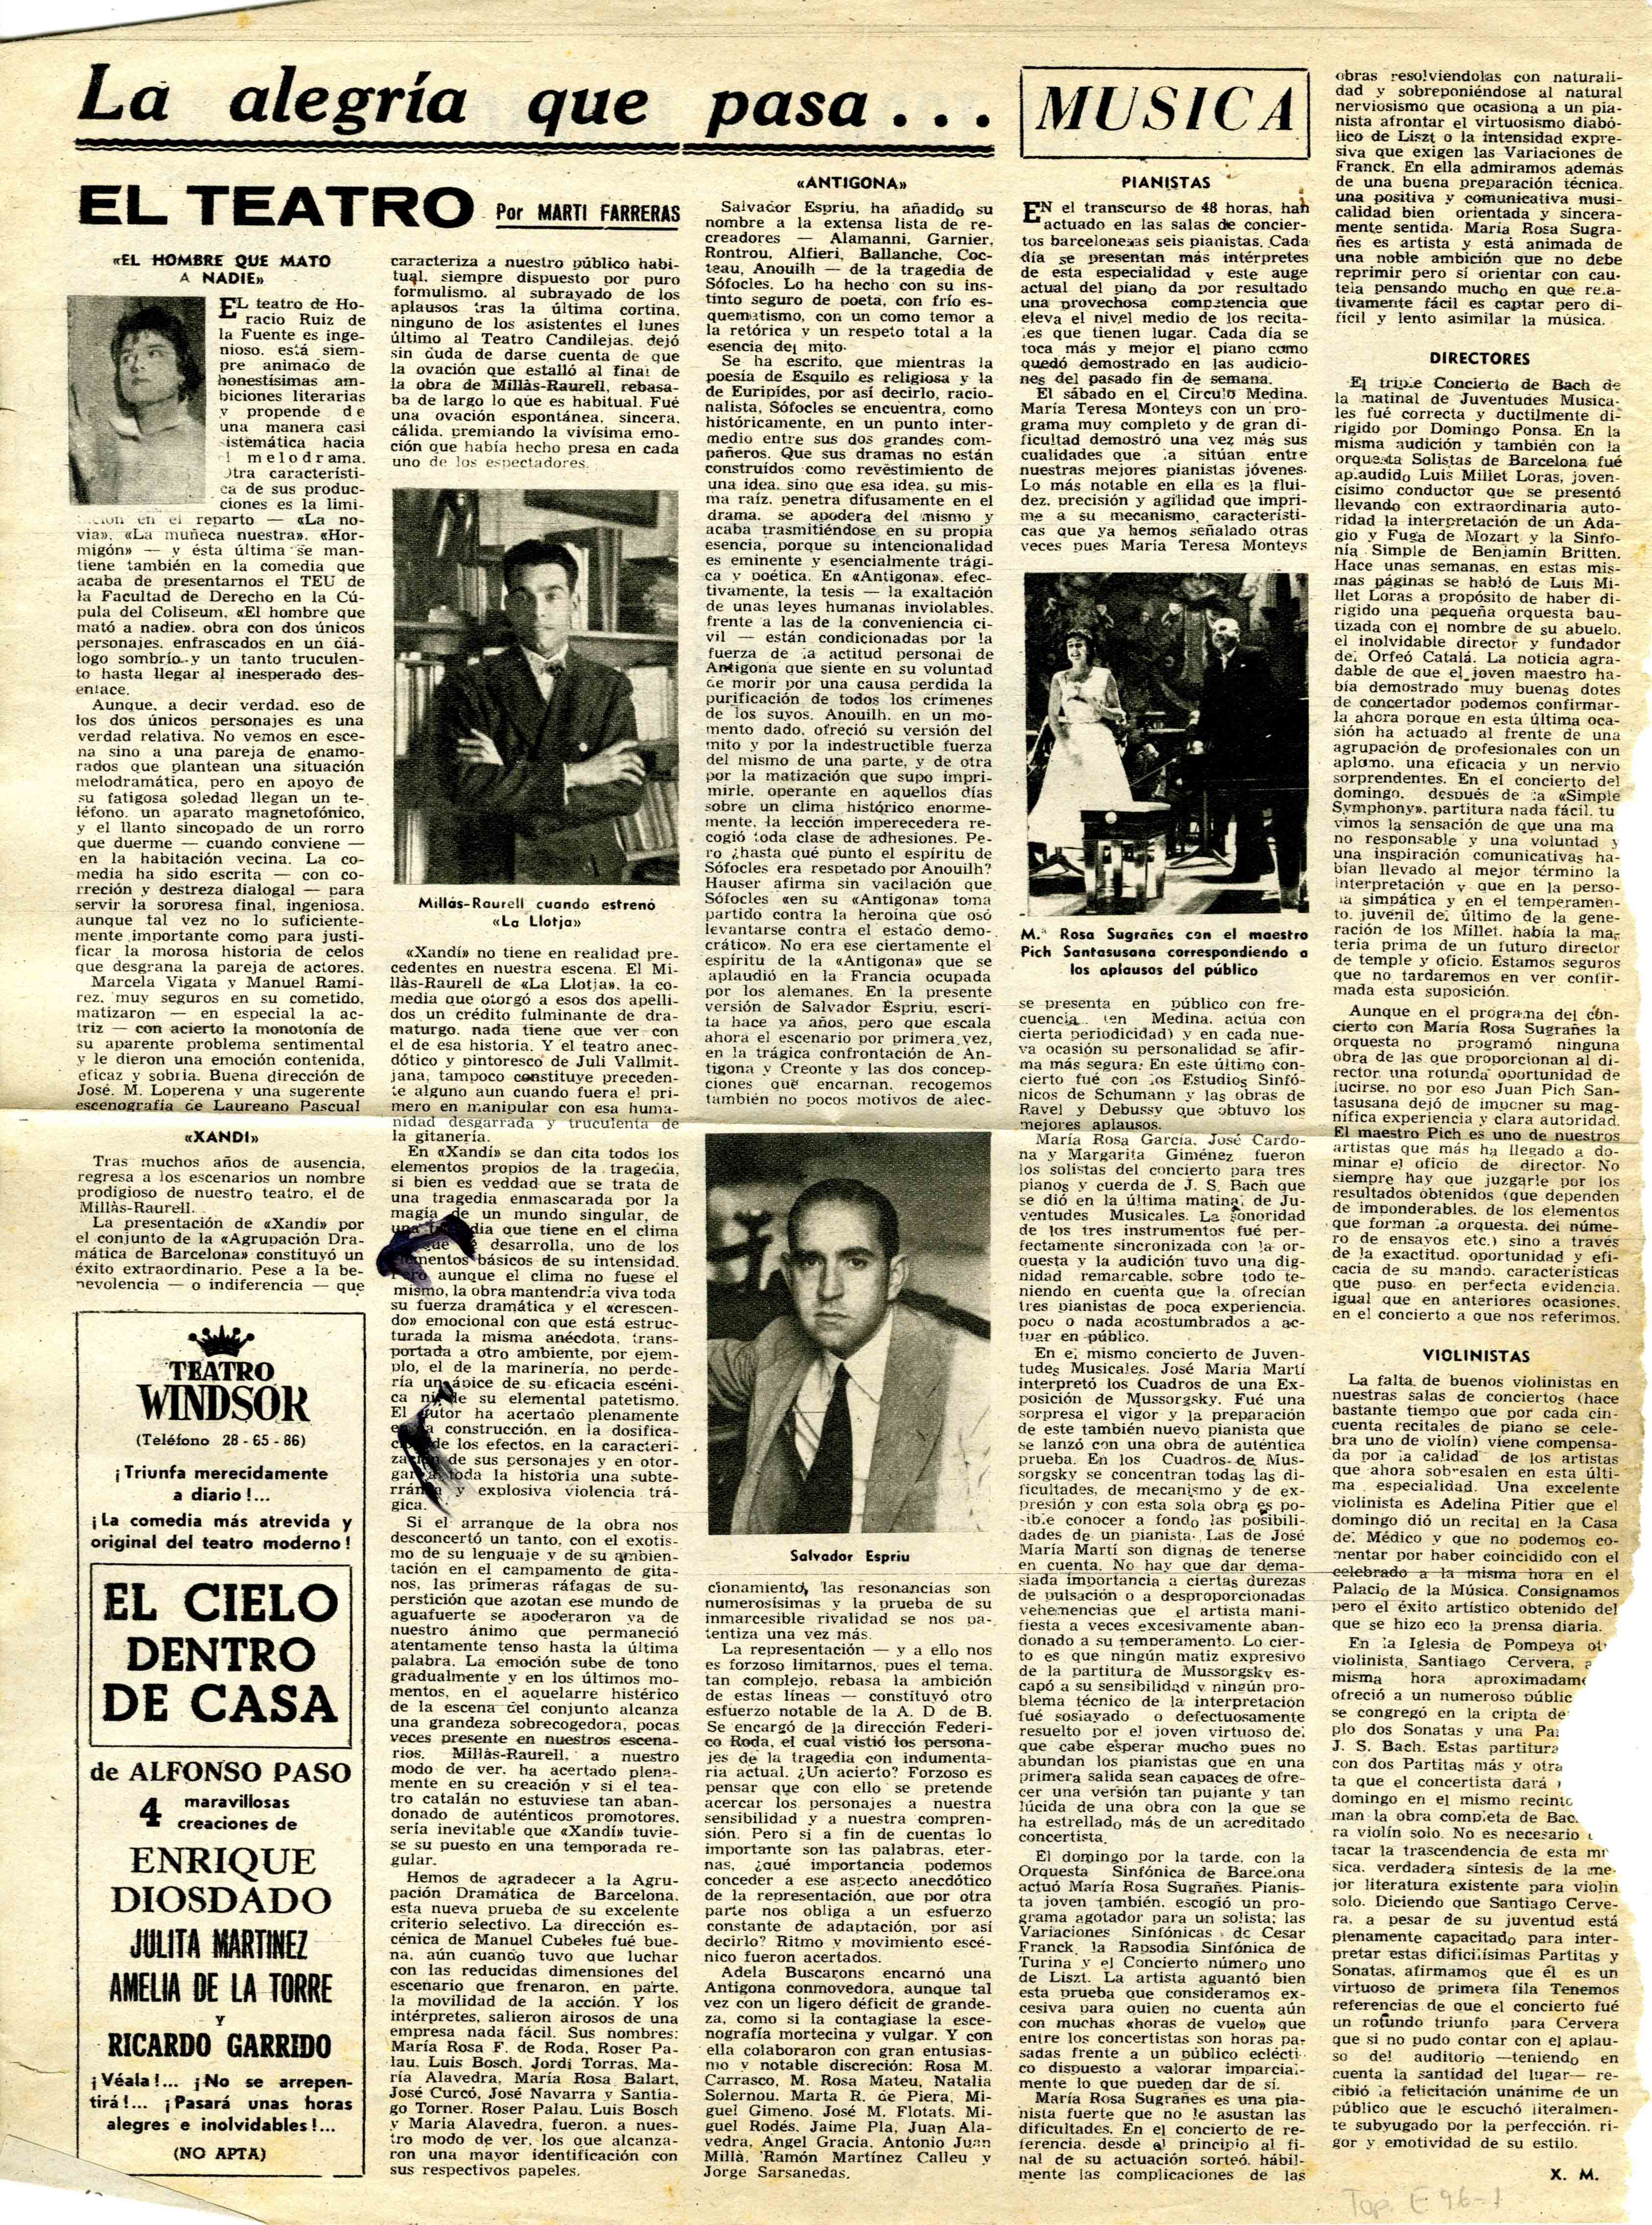 Crítica. Martí Farreras. La alegría que pasa... Diari de Barcelona. 26/03/1958